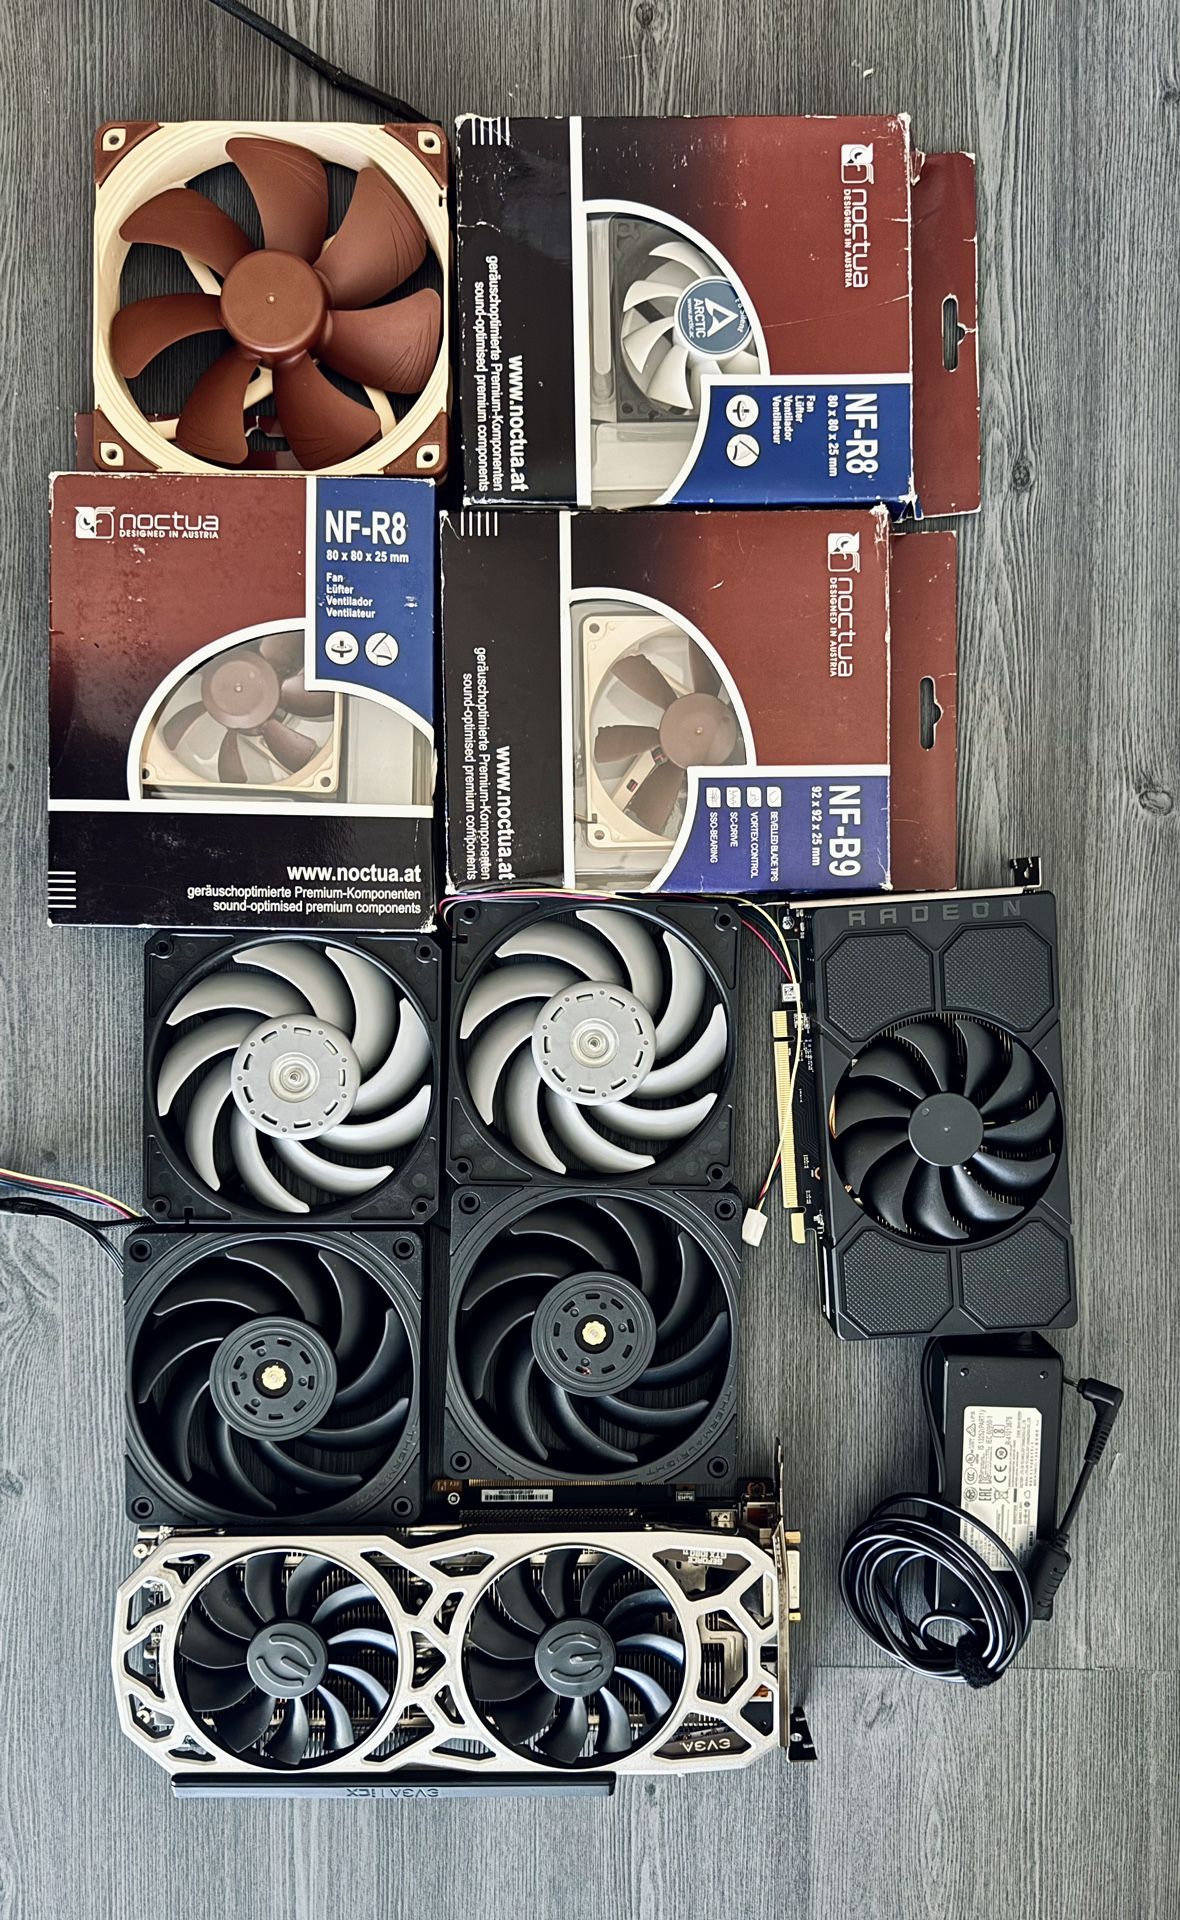 Computer Parts, AMD GPU, Noctua Case Fans etc